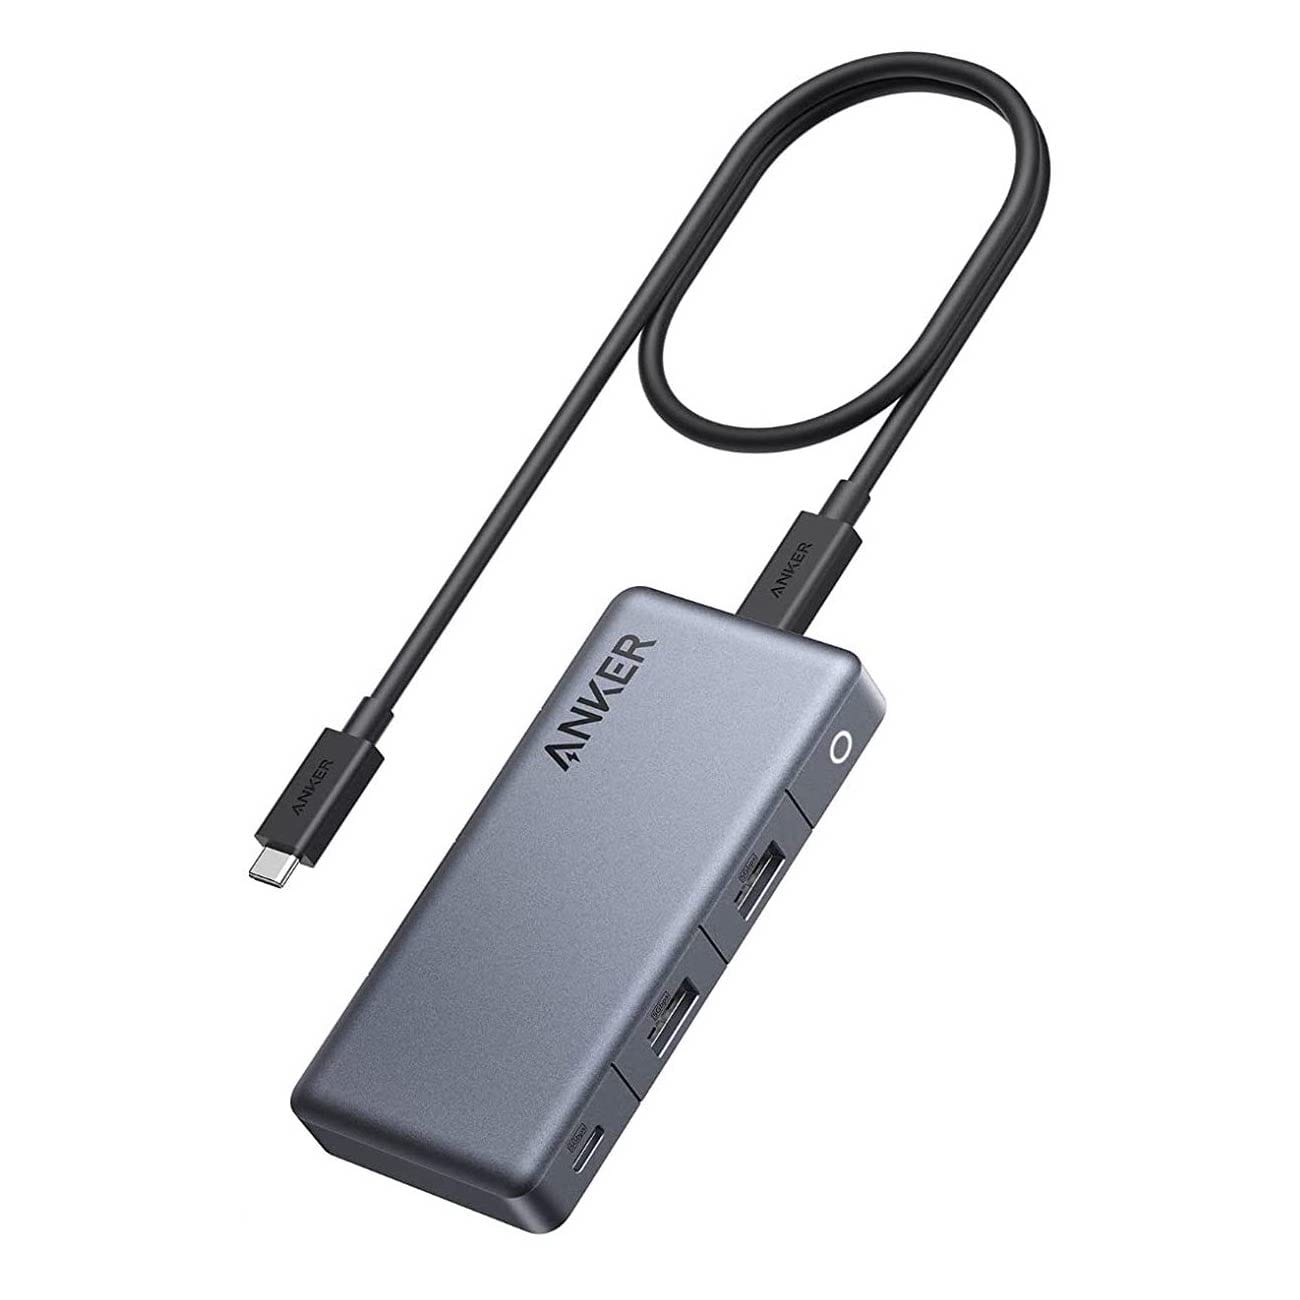 Anker、7-in-1 USB-Cハブを発売